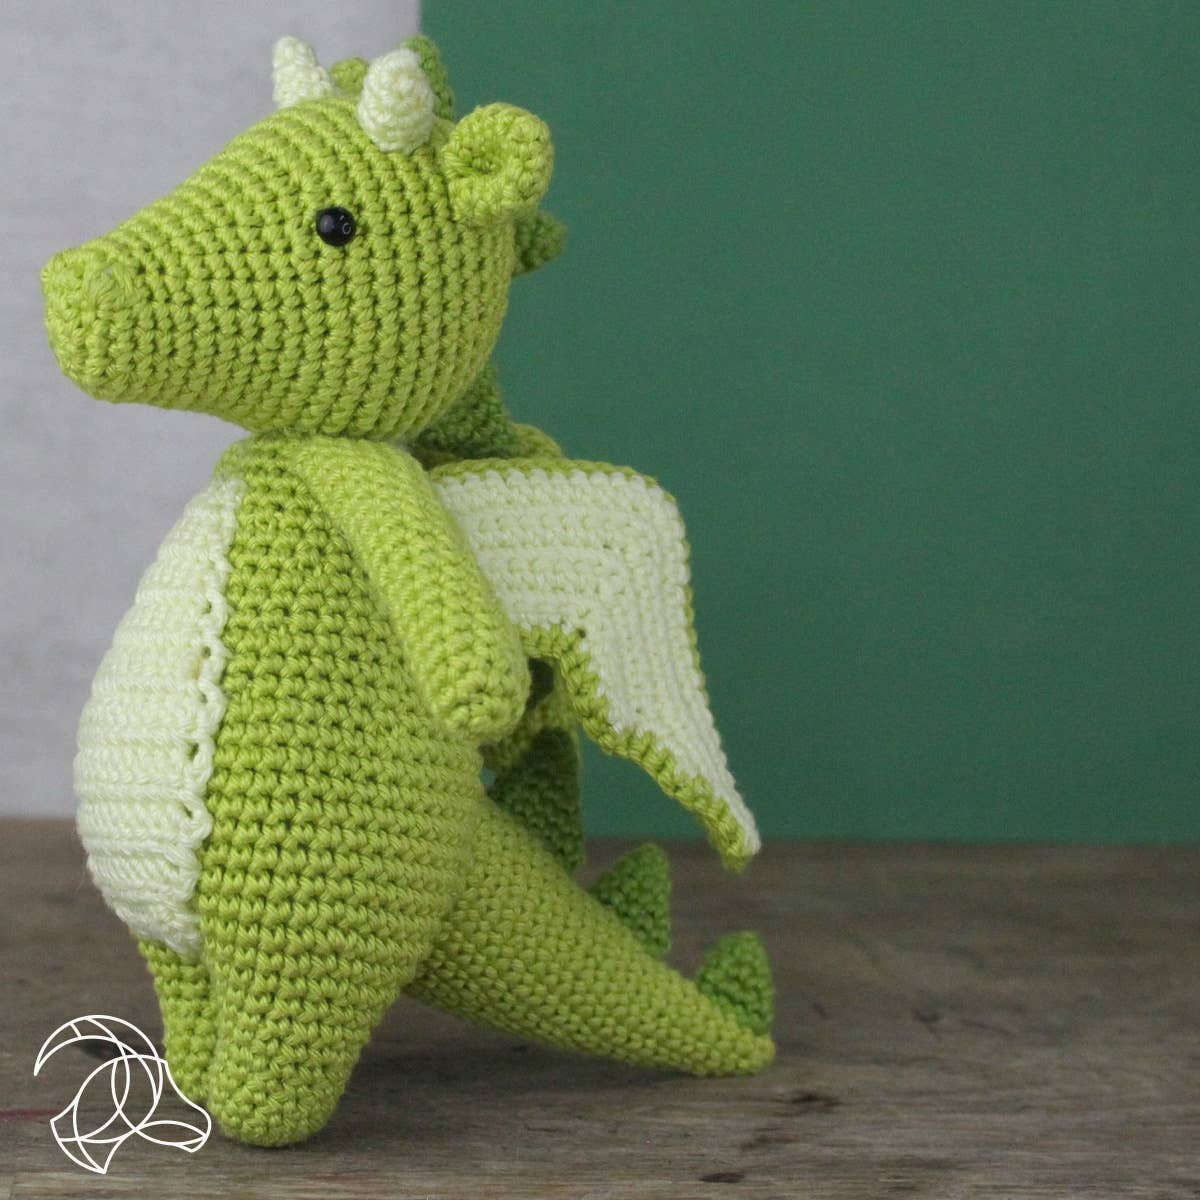 Hardicraft - DIY Crochet Kit - Doris Dragon